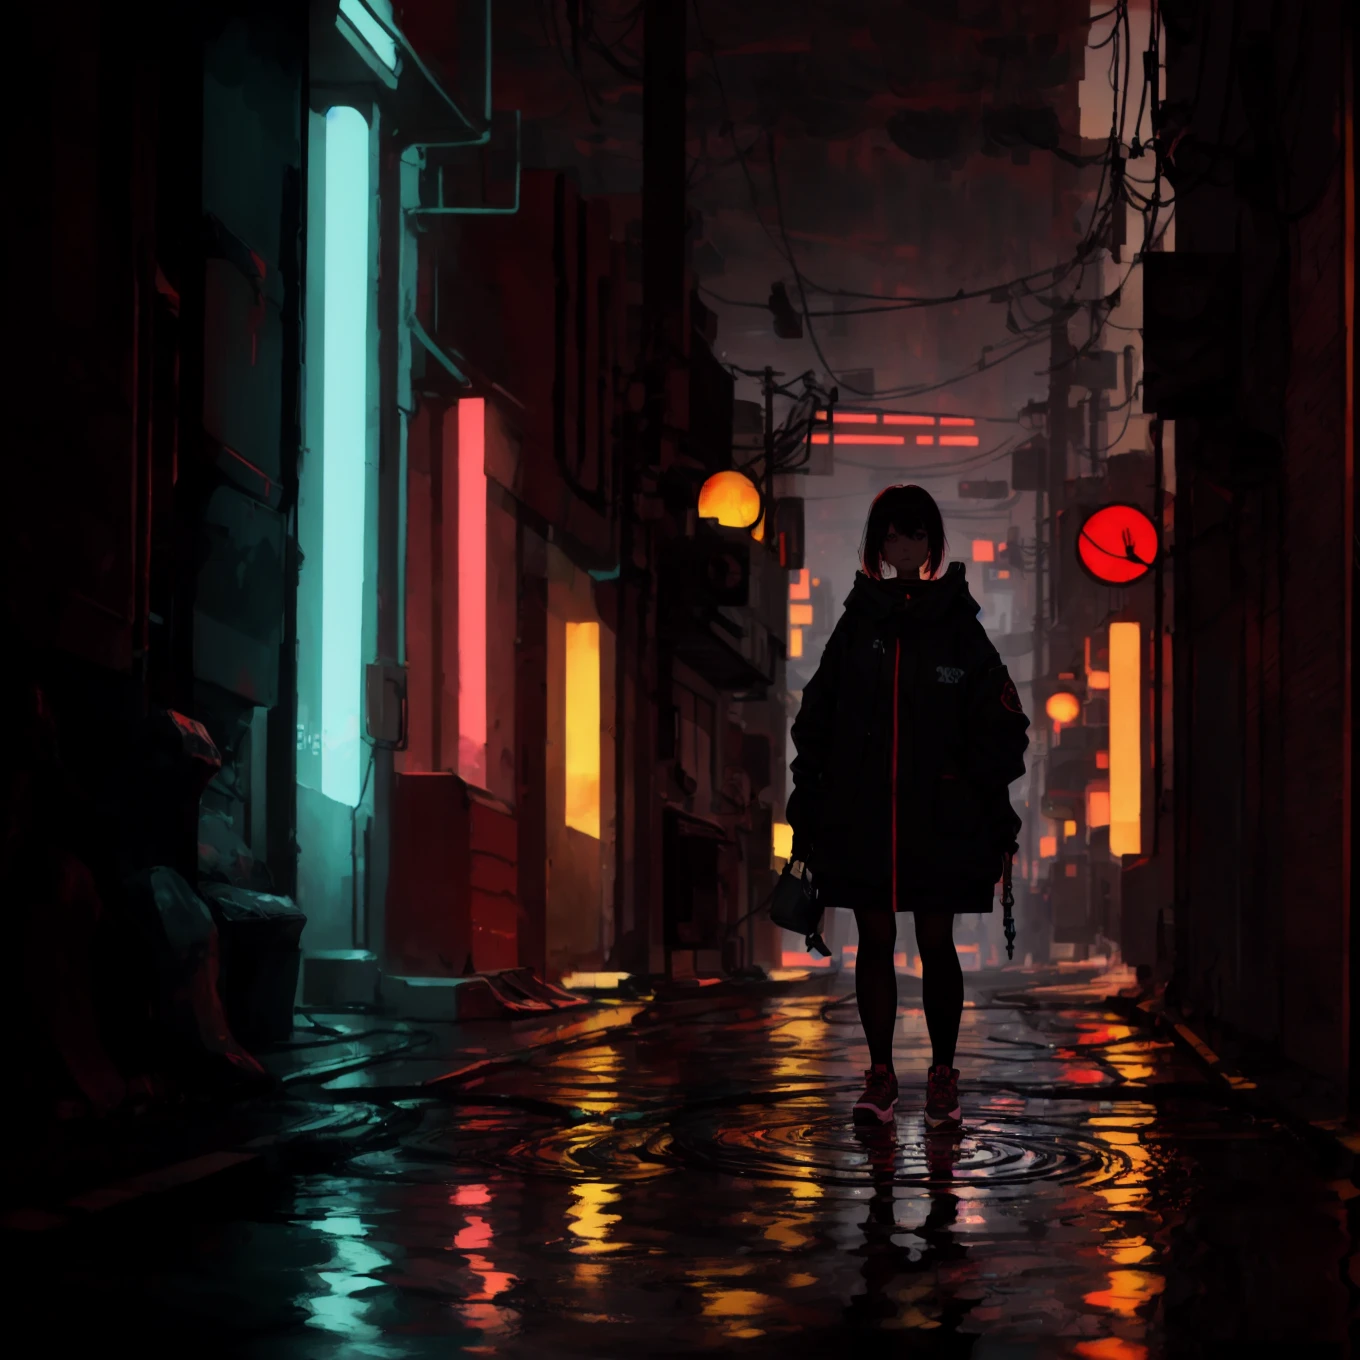 一個站在水坑裡的賽博朋克女孩,深淵背景, 紅色主題, 完美的陰影, 完美的反射, 光線追蹤, 紅色亮點, 紅光, 反光的, 照明不佳, 未來賽博龐克城市, 午夜, 雨